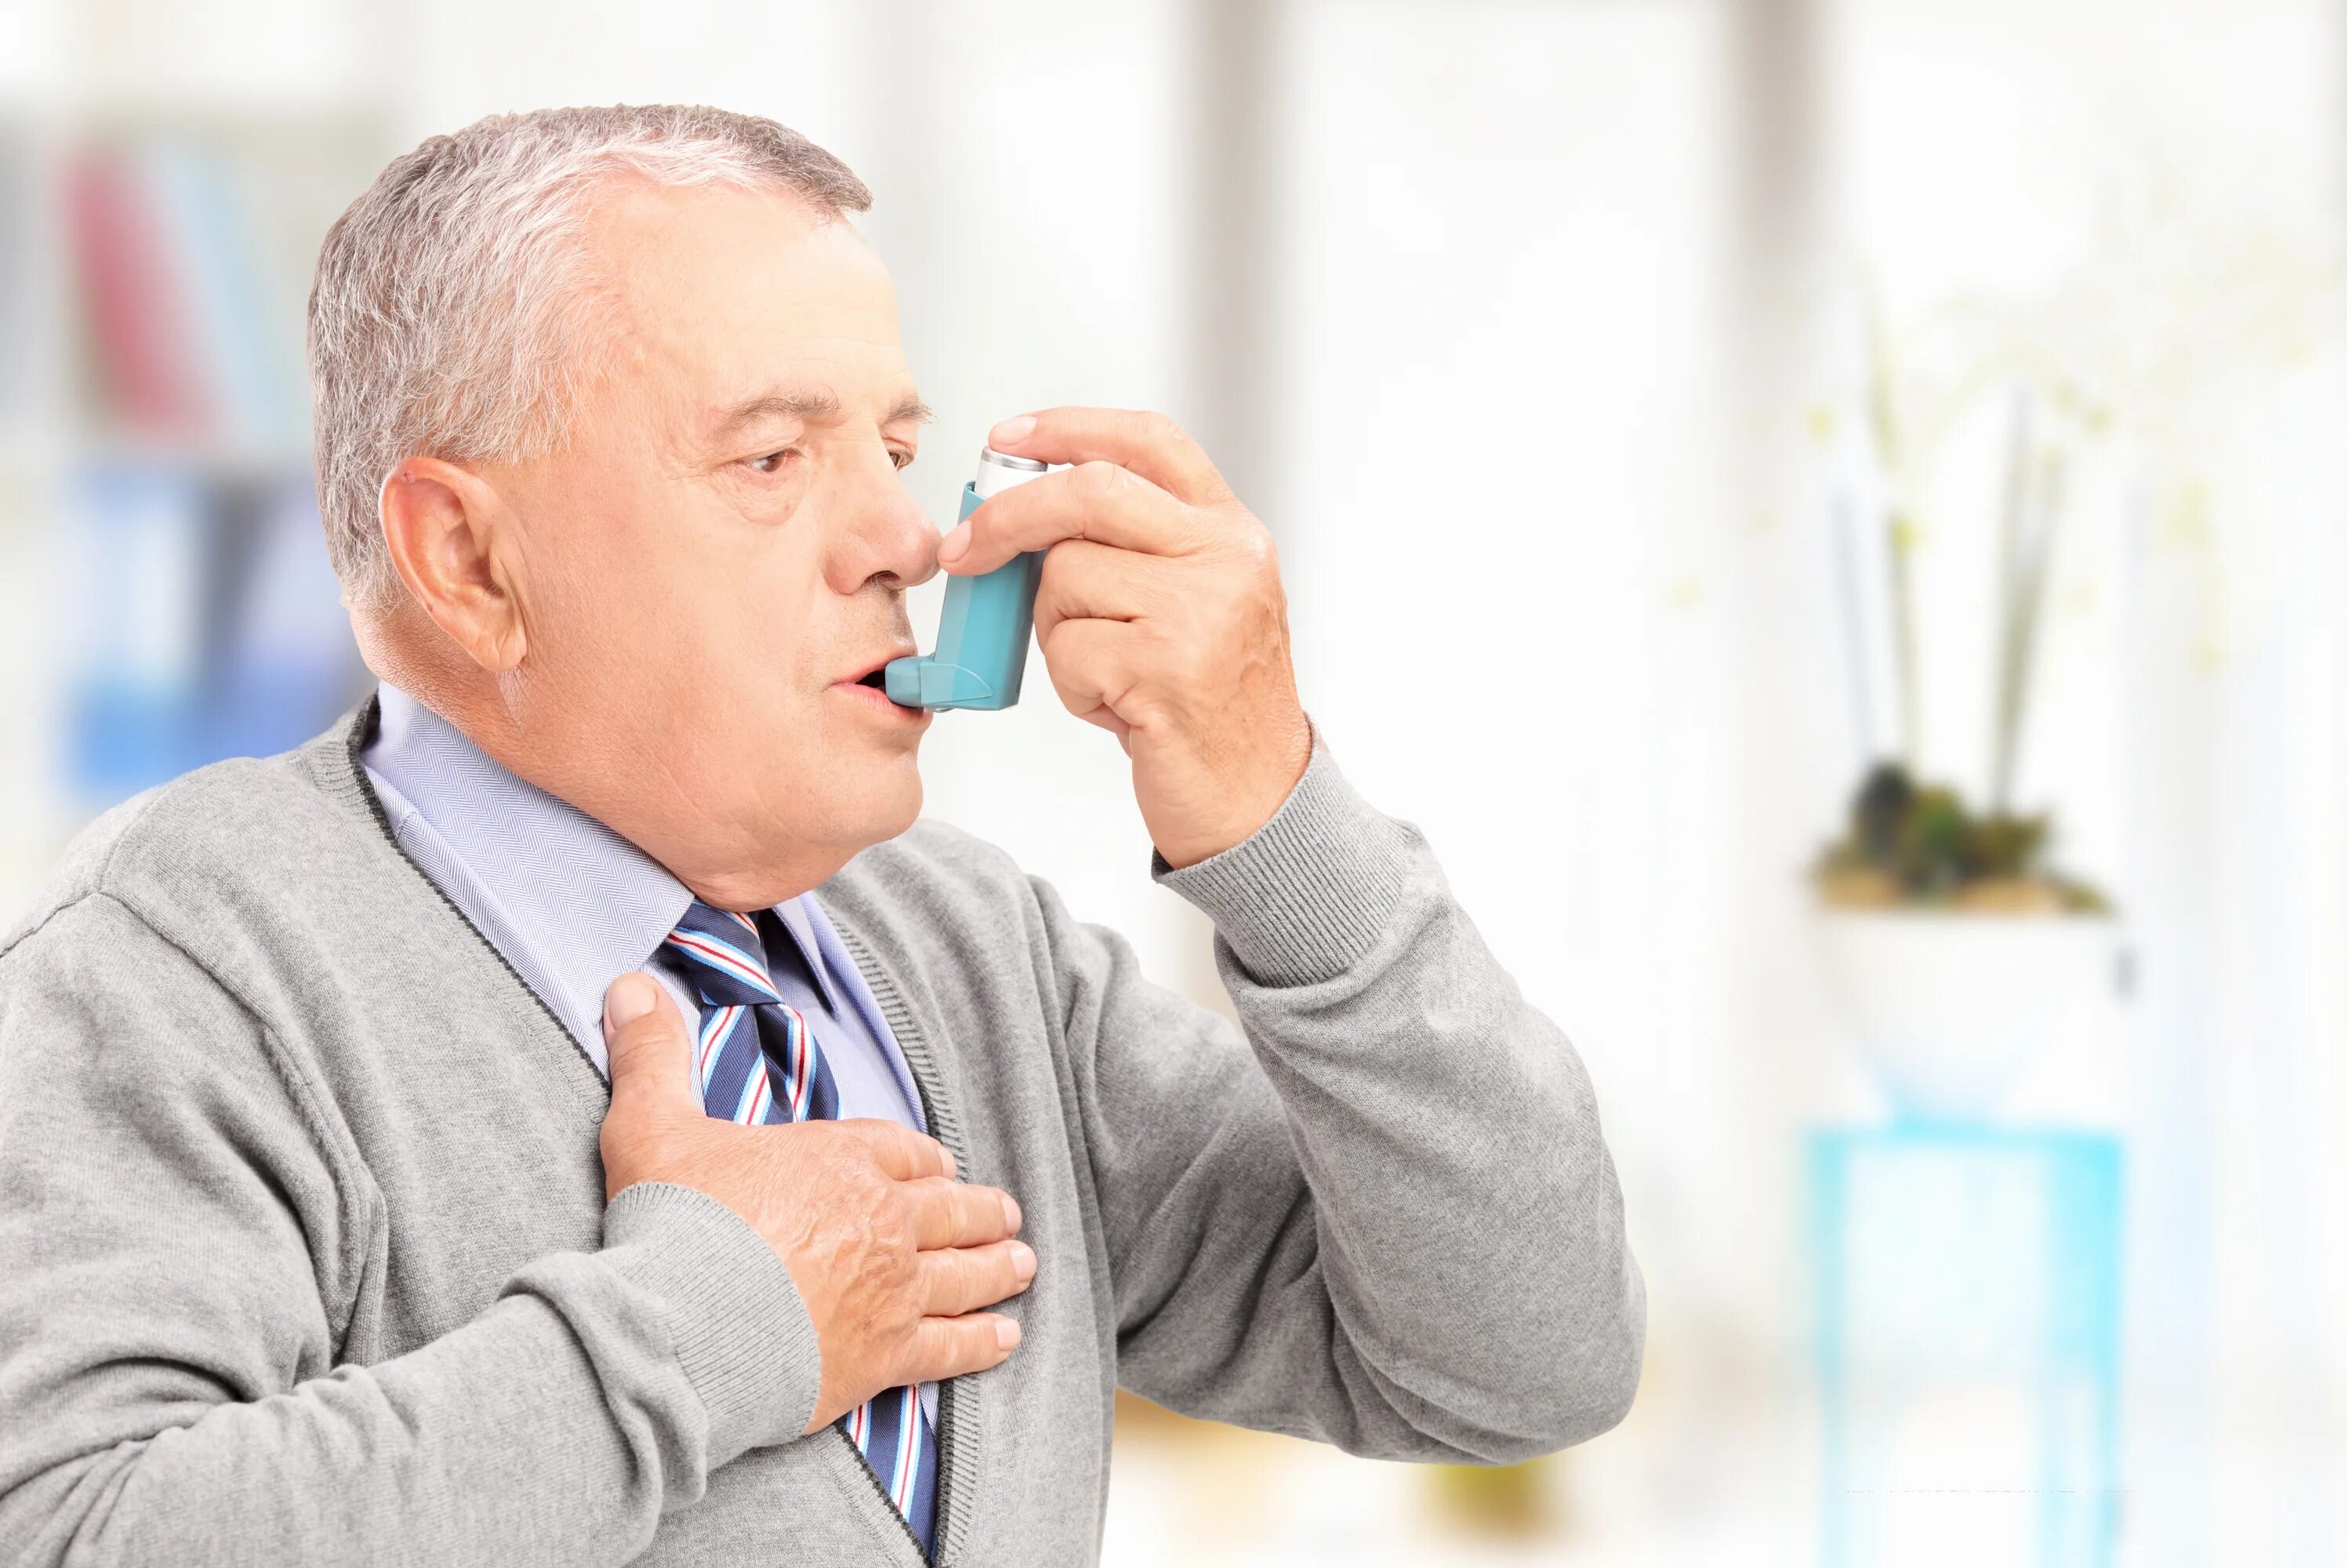 Нехватка воздуха причины у мужчин. Бронхиальная астма. Пациент с бронхиальной астмой. Человек с ингалятором. Пациент с ингалятором.